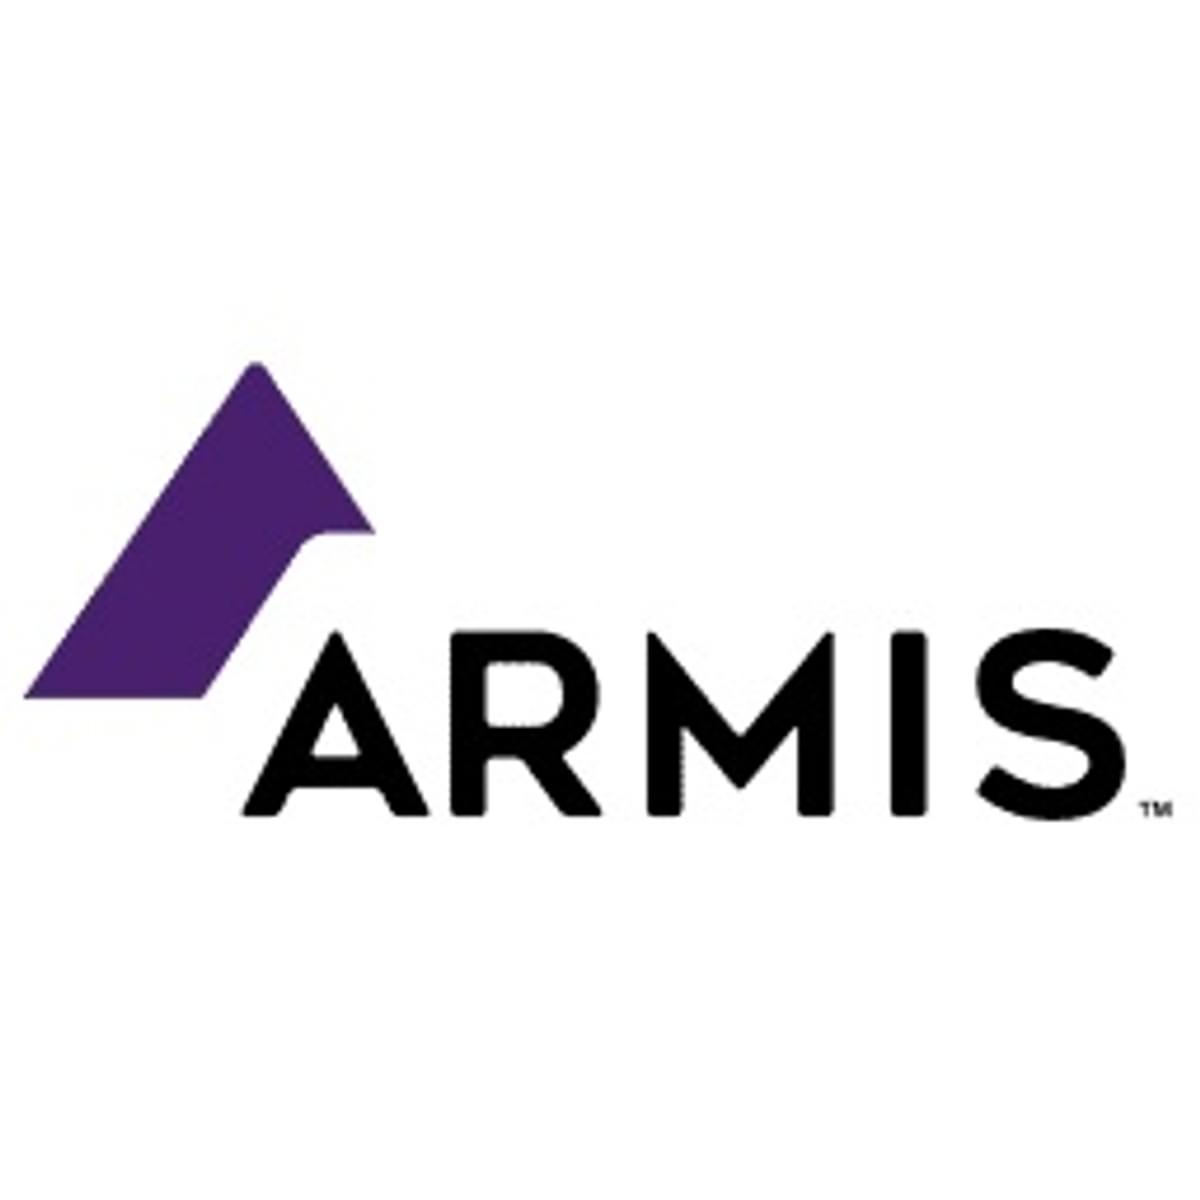 IoT security specialist Armis krijgt flinke kapitaalinjectie image